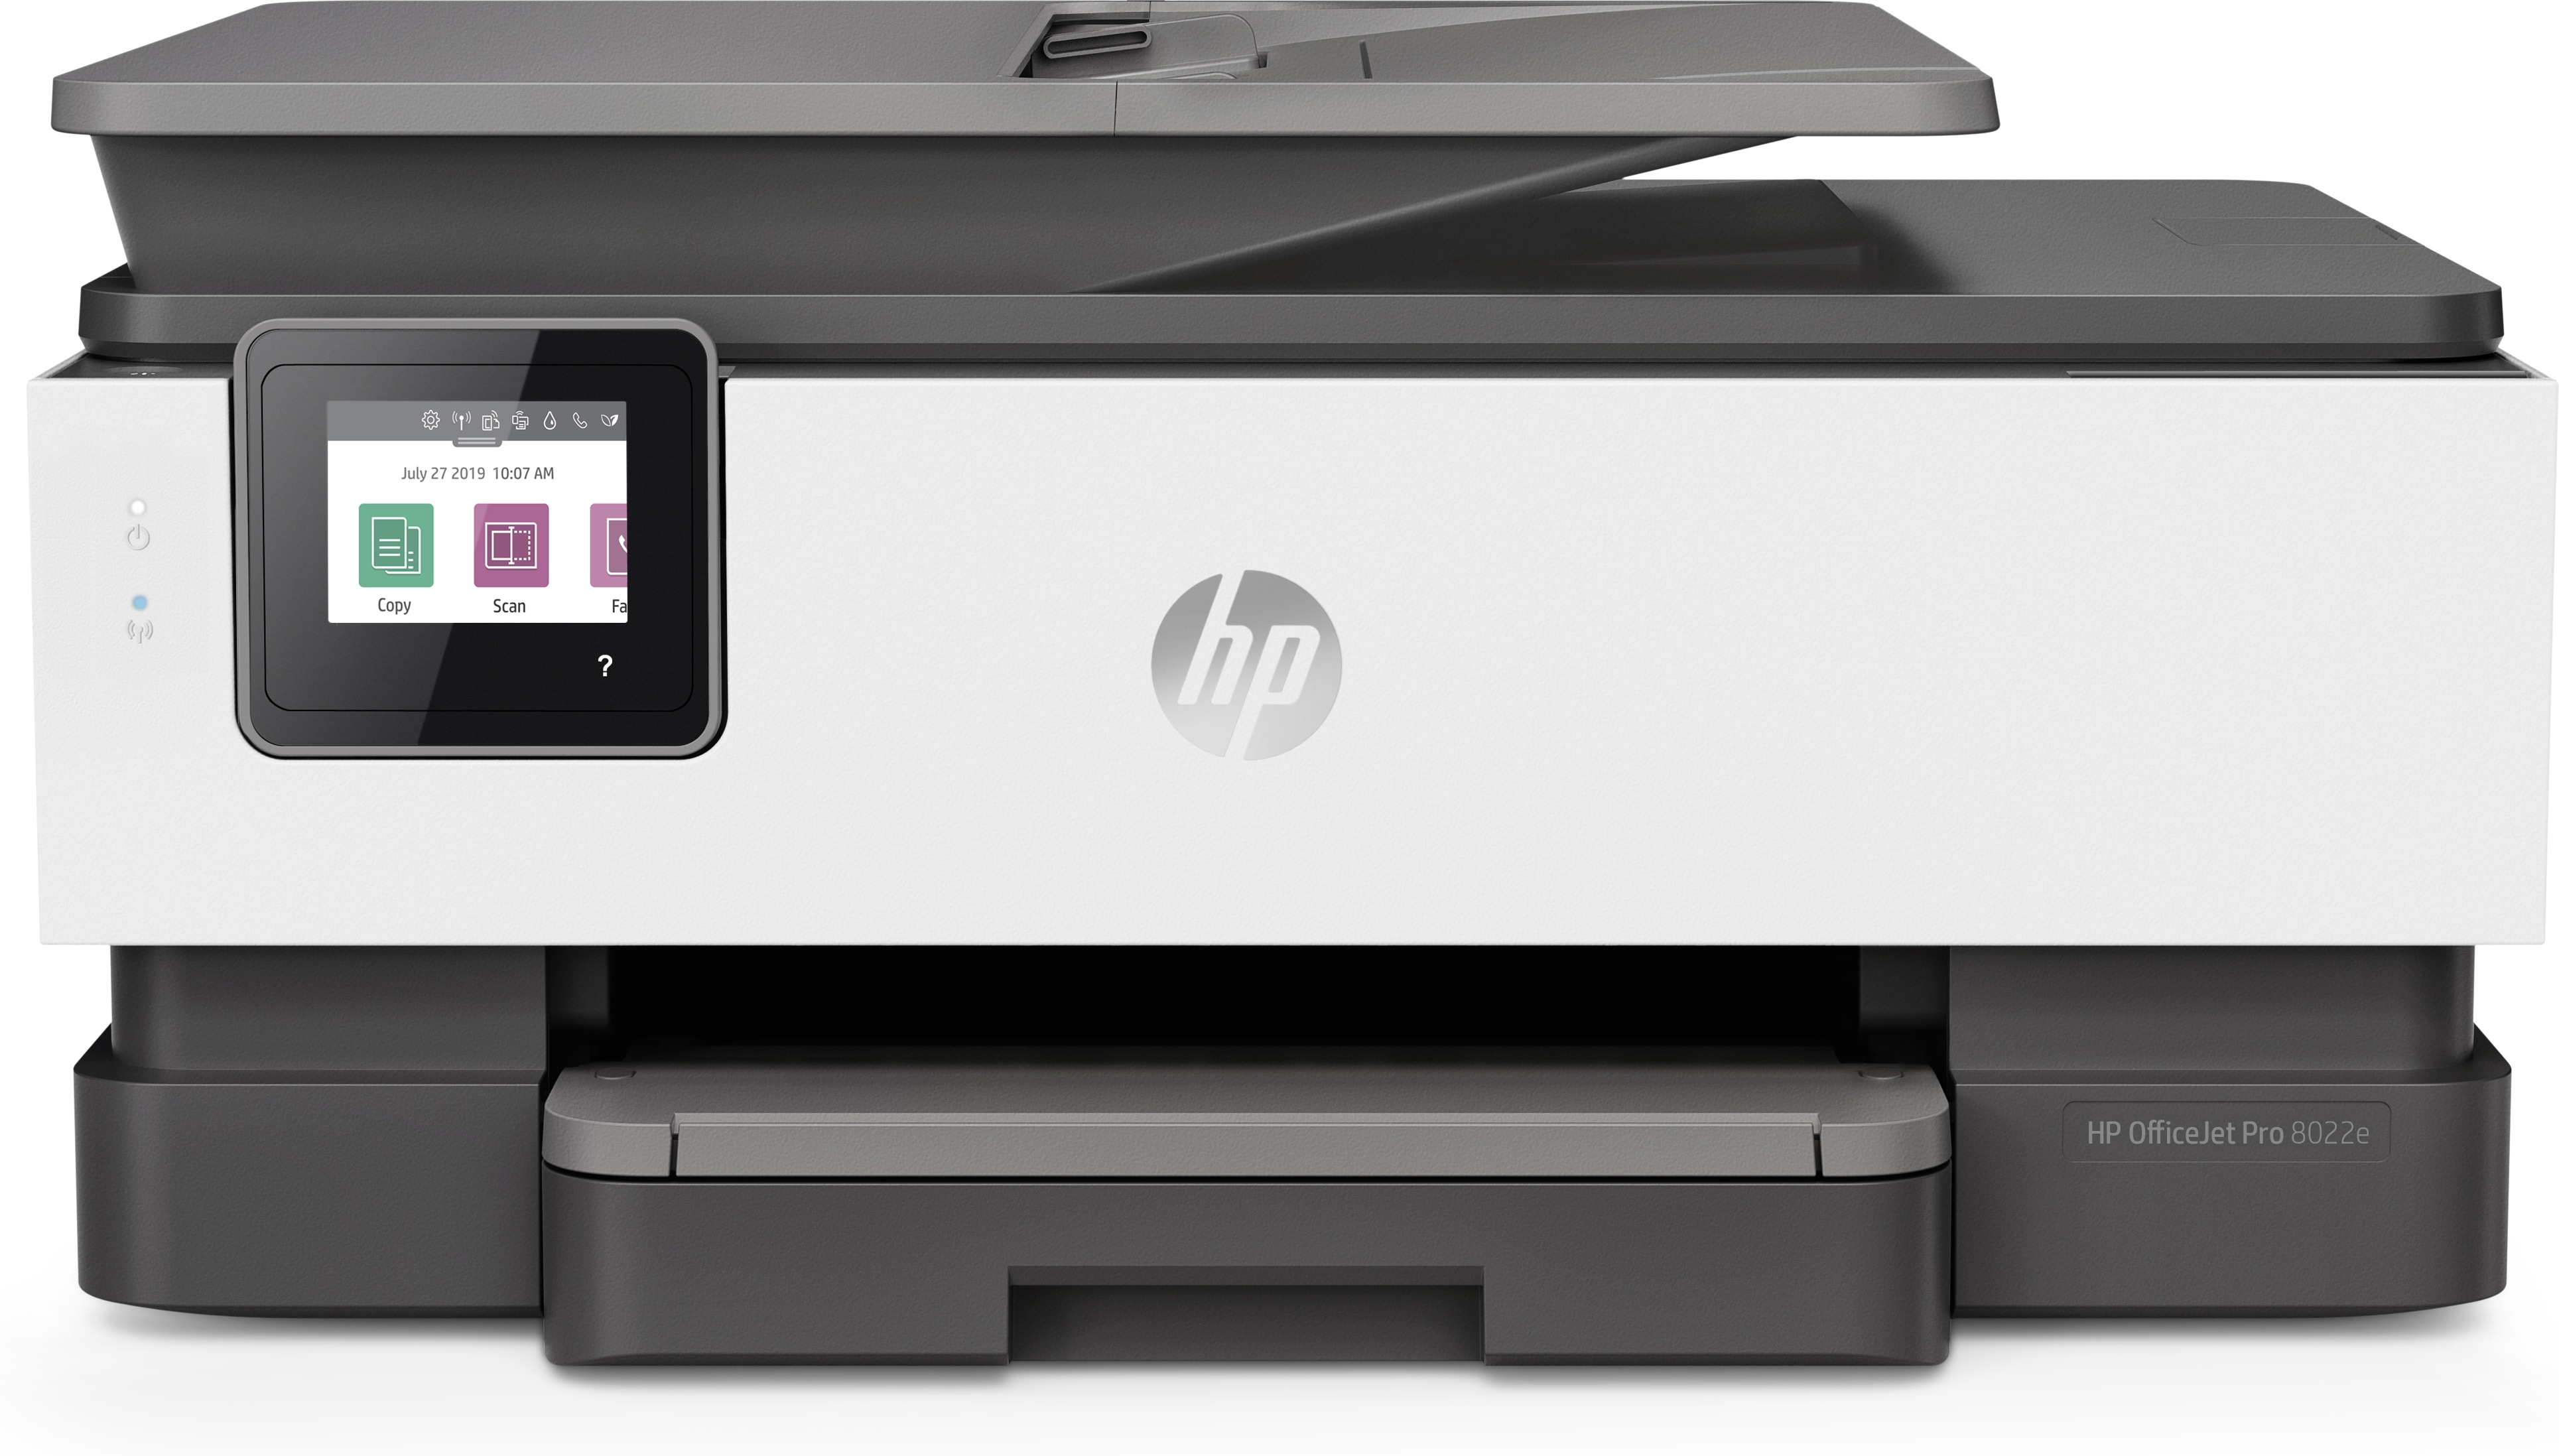 HP OfficeJet Pro HP 8022e Allt-i-ett-skrivare, Färg, Skrivare för Hemma, Skriv ut, kopiera, skanna, fax, HP+; Berättigad till HP Instant Ink; Automatisk dokumentmatare; Dubbelsidig utskrift